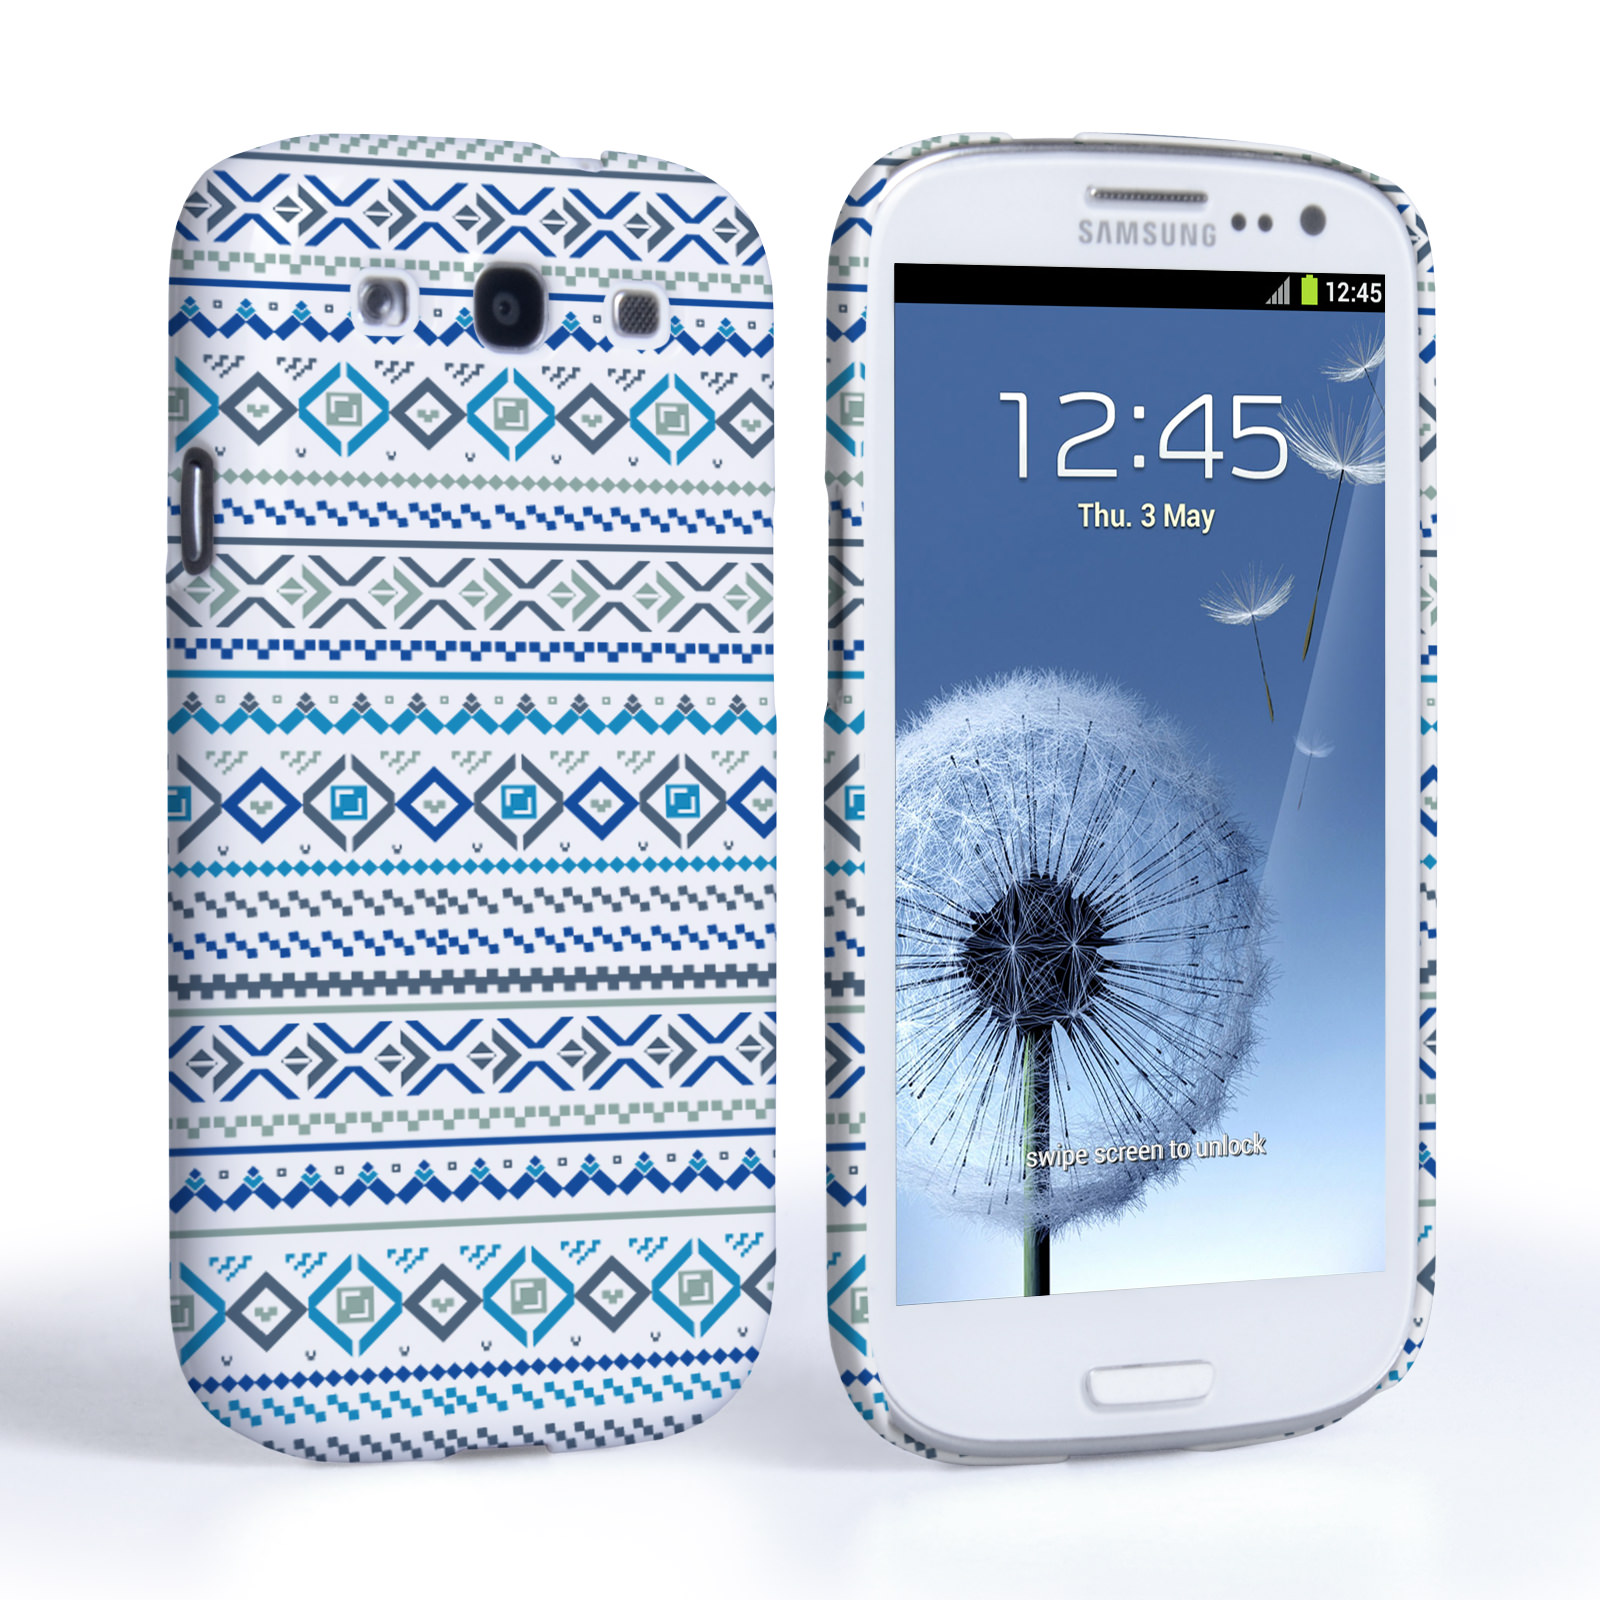 Caseflex Samsung Galaxy S3 Fairisle Case – Blue with White Background